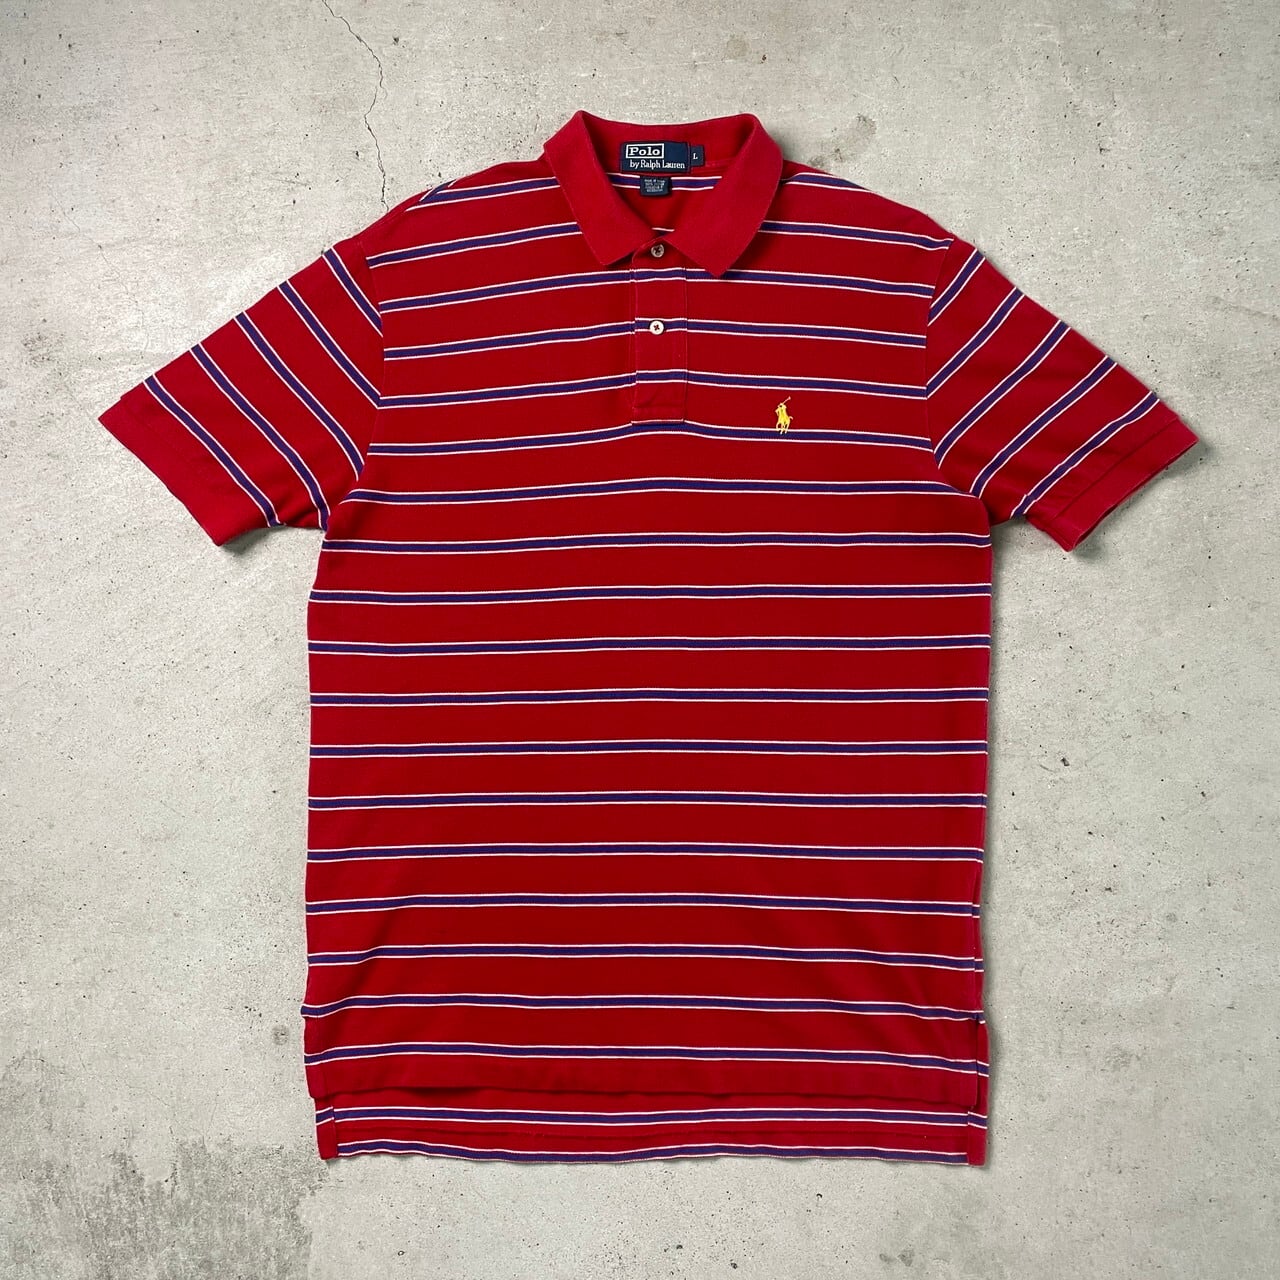 メンズ 半袖ポロシャツ (L) ボーダー 紺 赤 ゴルフ - ポロシャツ